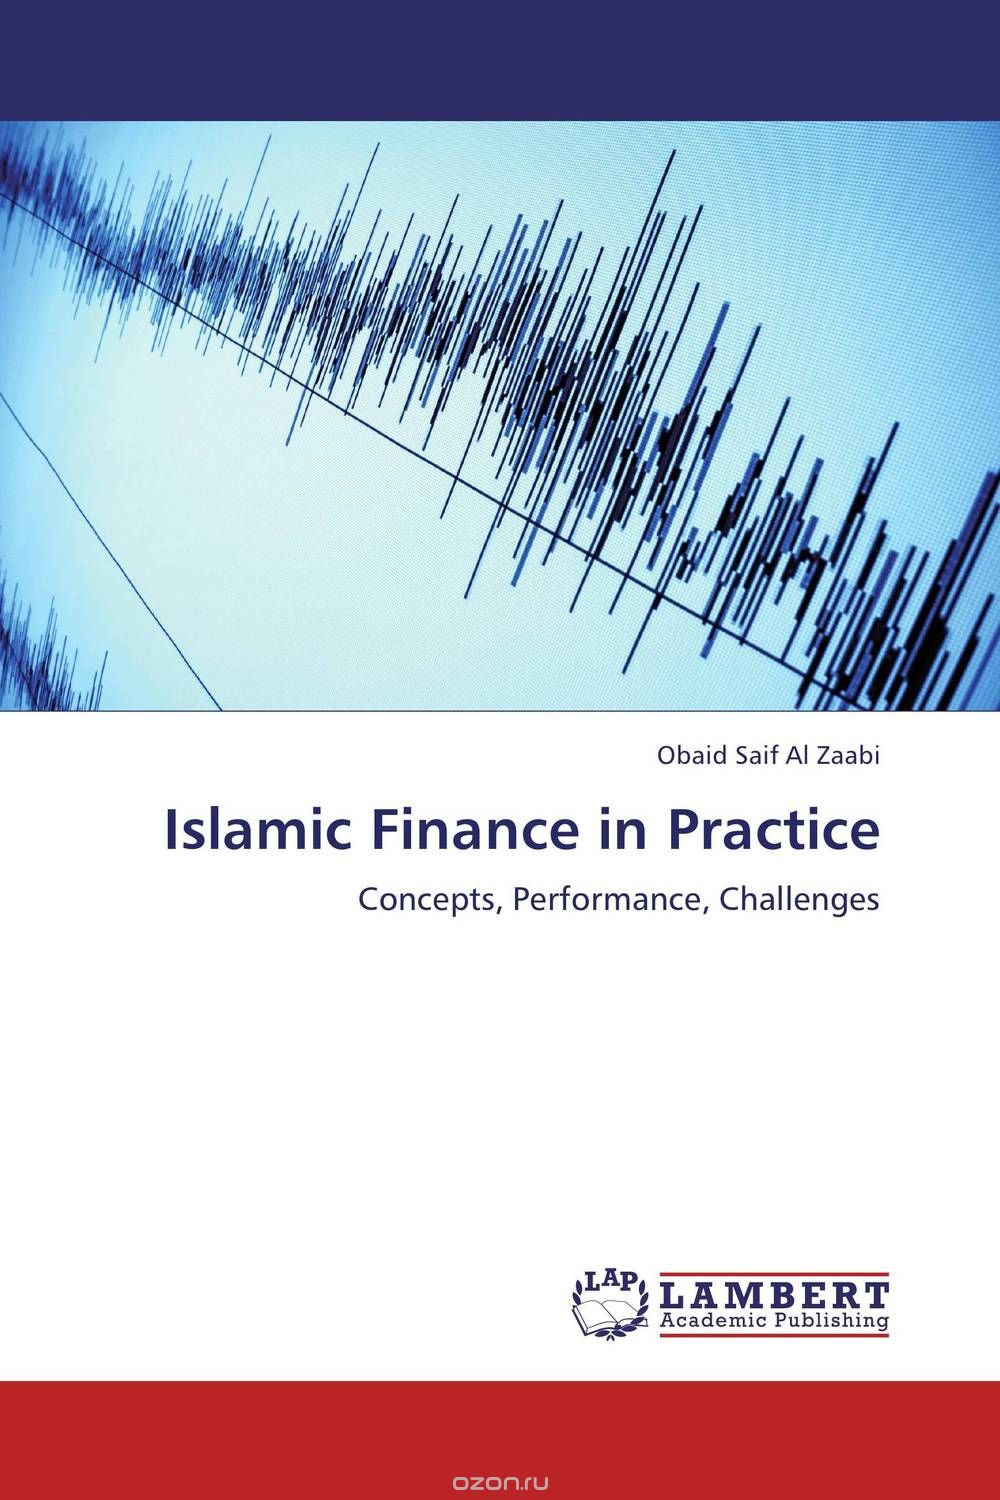 Скачать книгу "Islamic Finance in Practice"